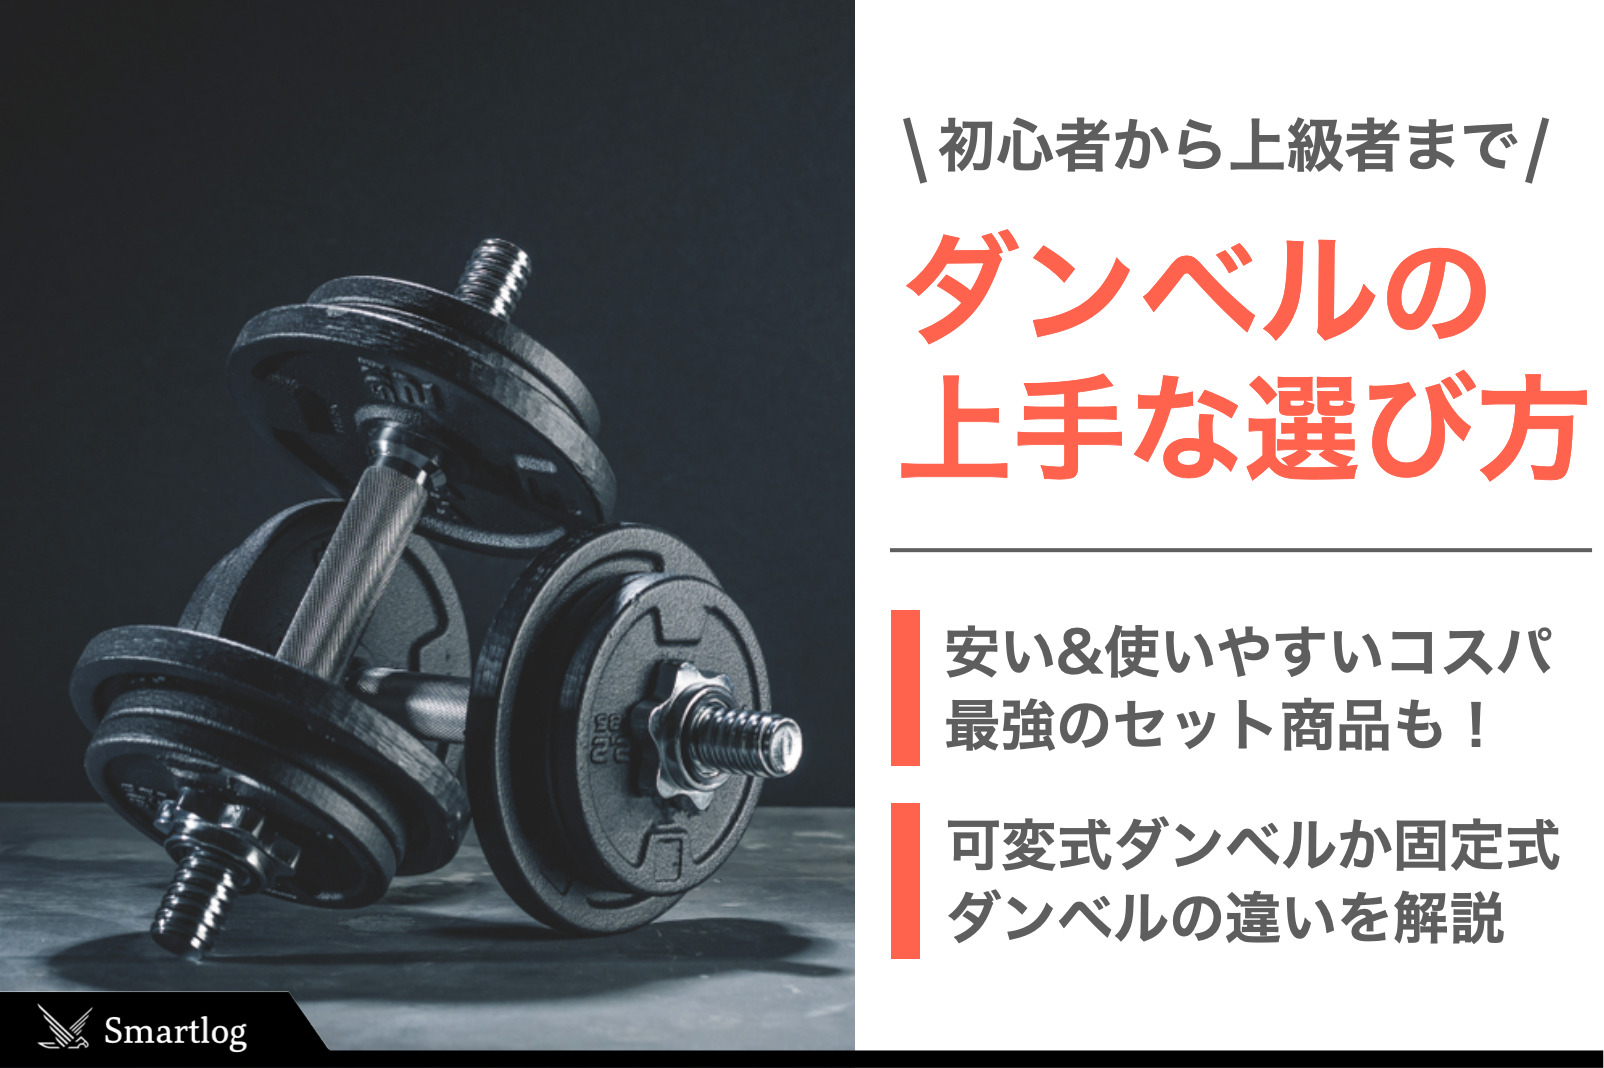 アイロテック 可変式ダンベル 60kgセット【腹筋ローラー付】 - フィットネス、トレーニング